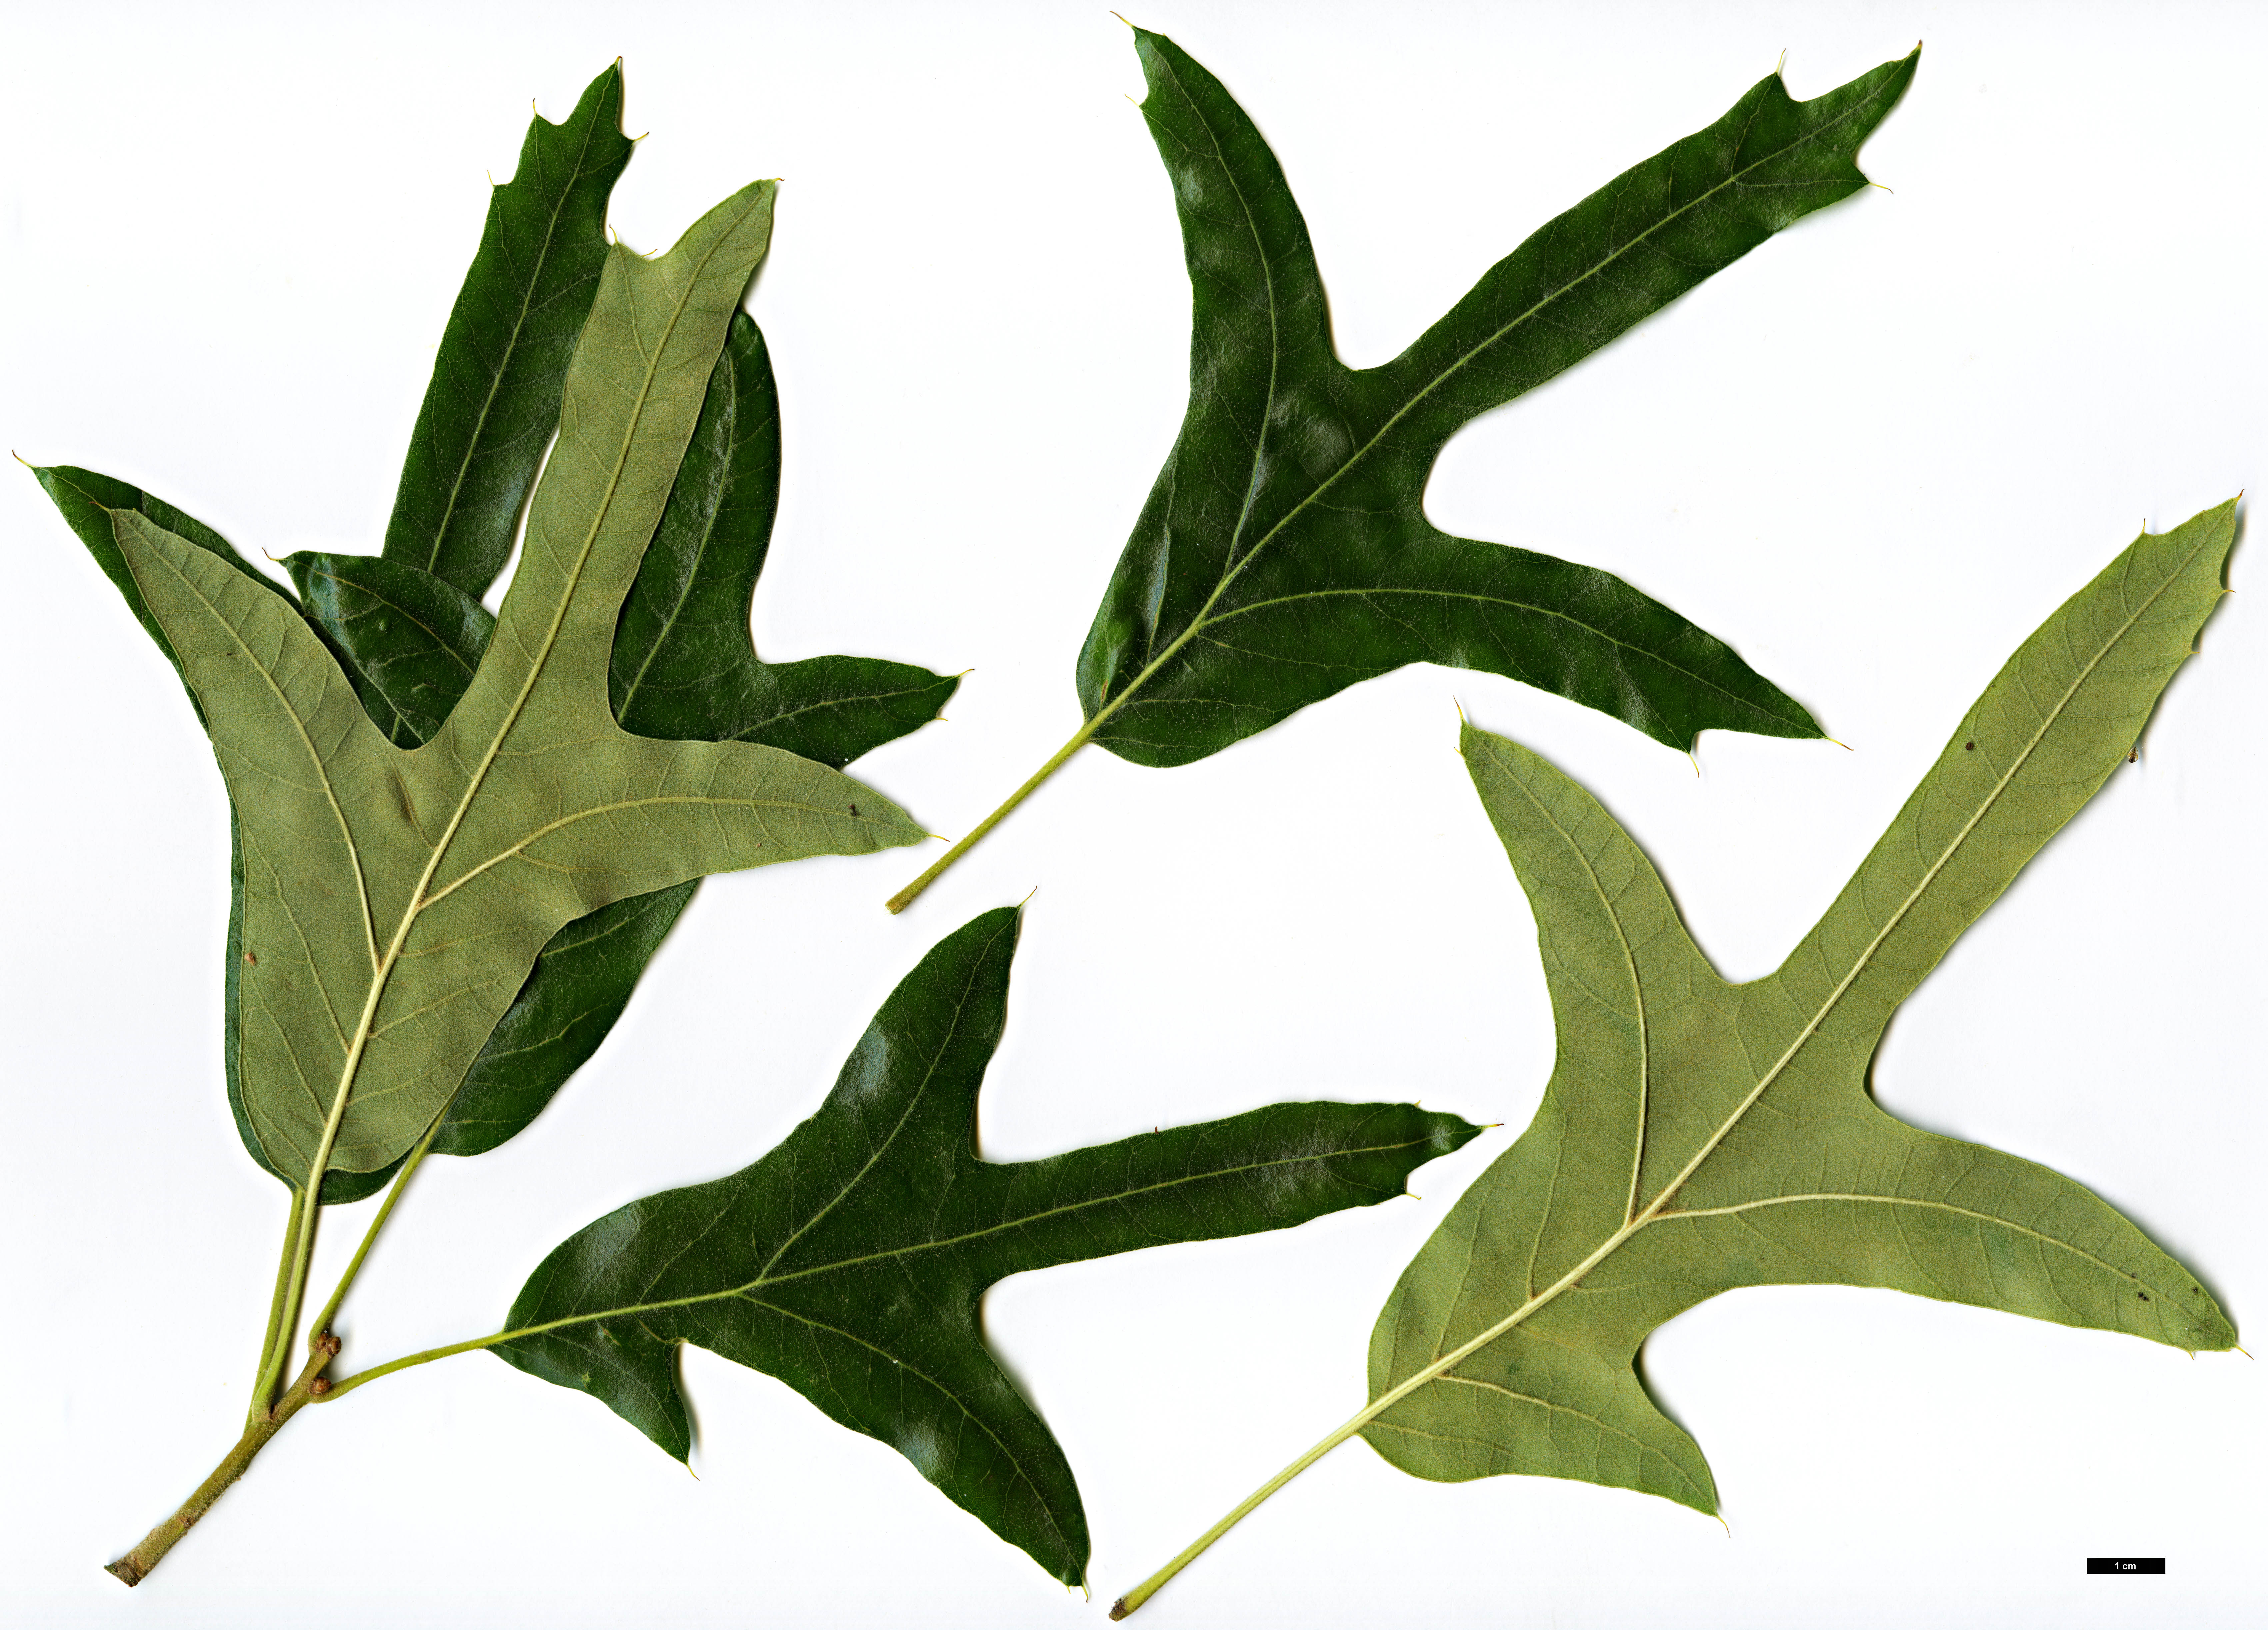 High resolution image: Family: Fagaceae - Genus: Quercus - Taxon: falcata